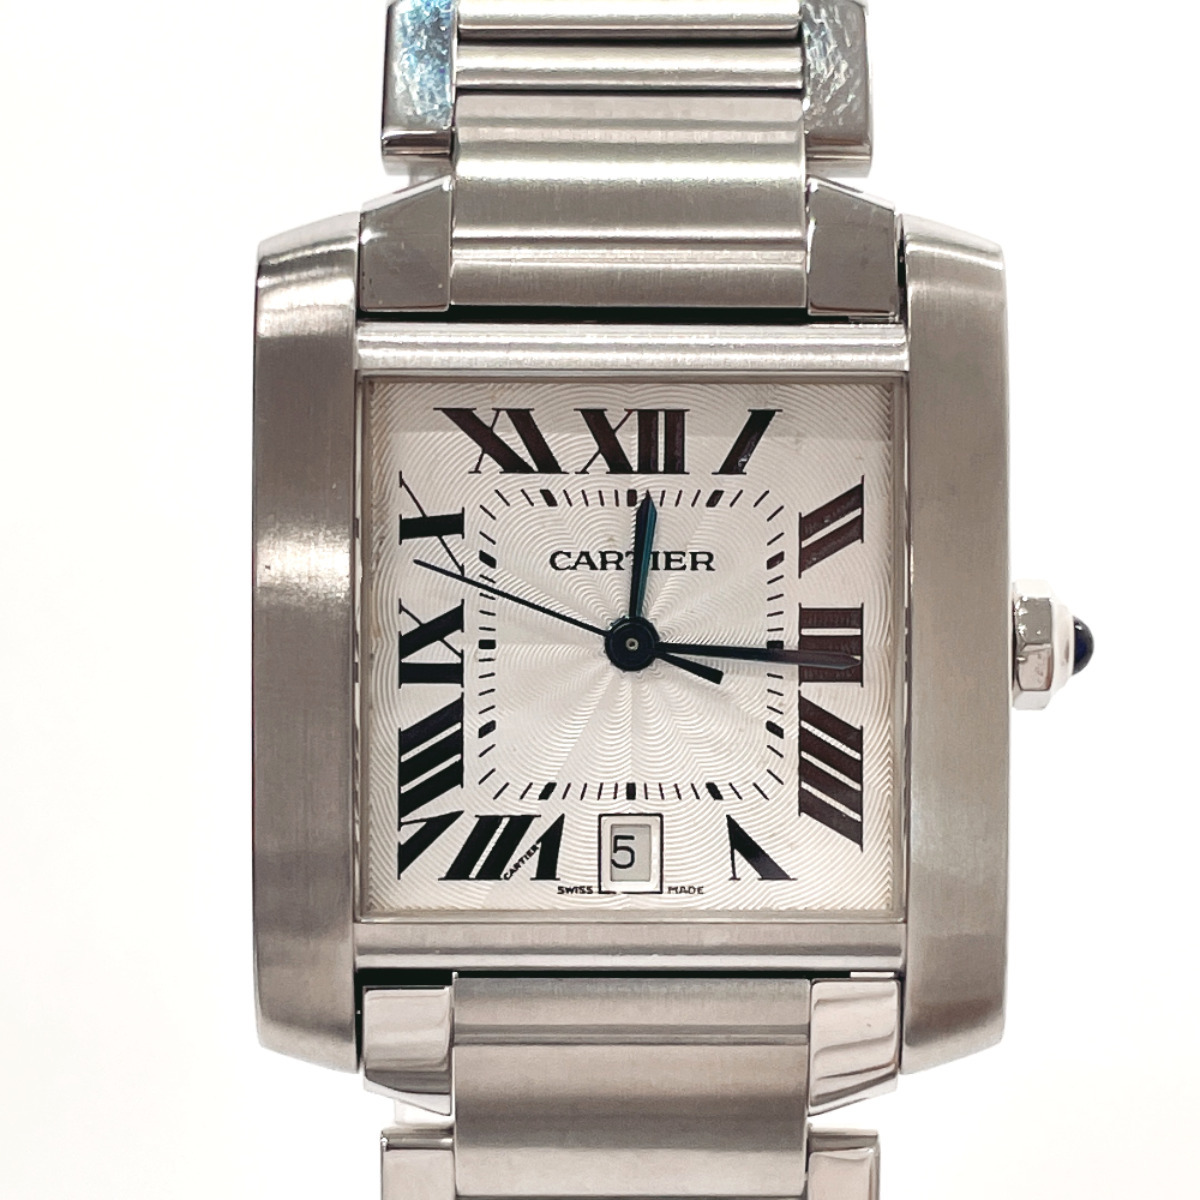 カルティエ CARTIER 腕時計 W51002Q3 タンクフランセーズ LM ステンレススチール シルバー 自動巻き